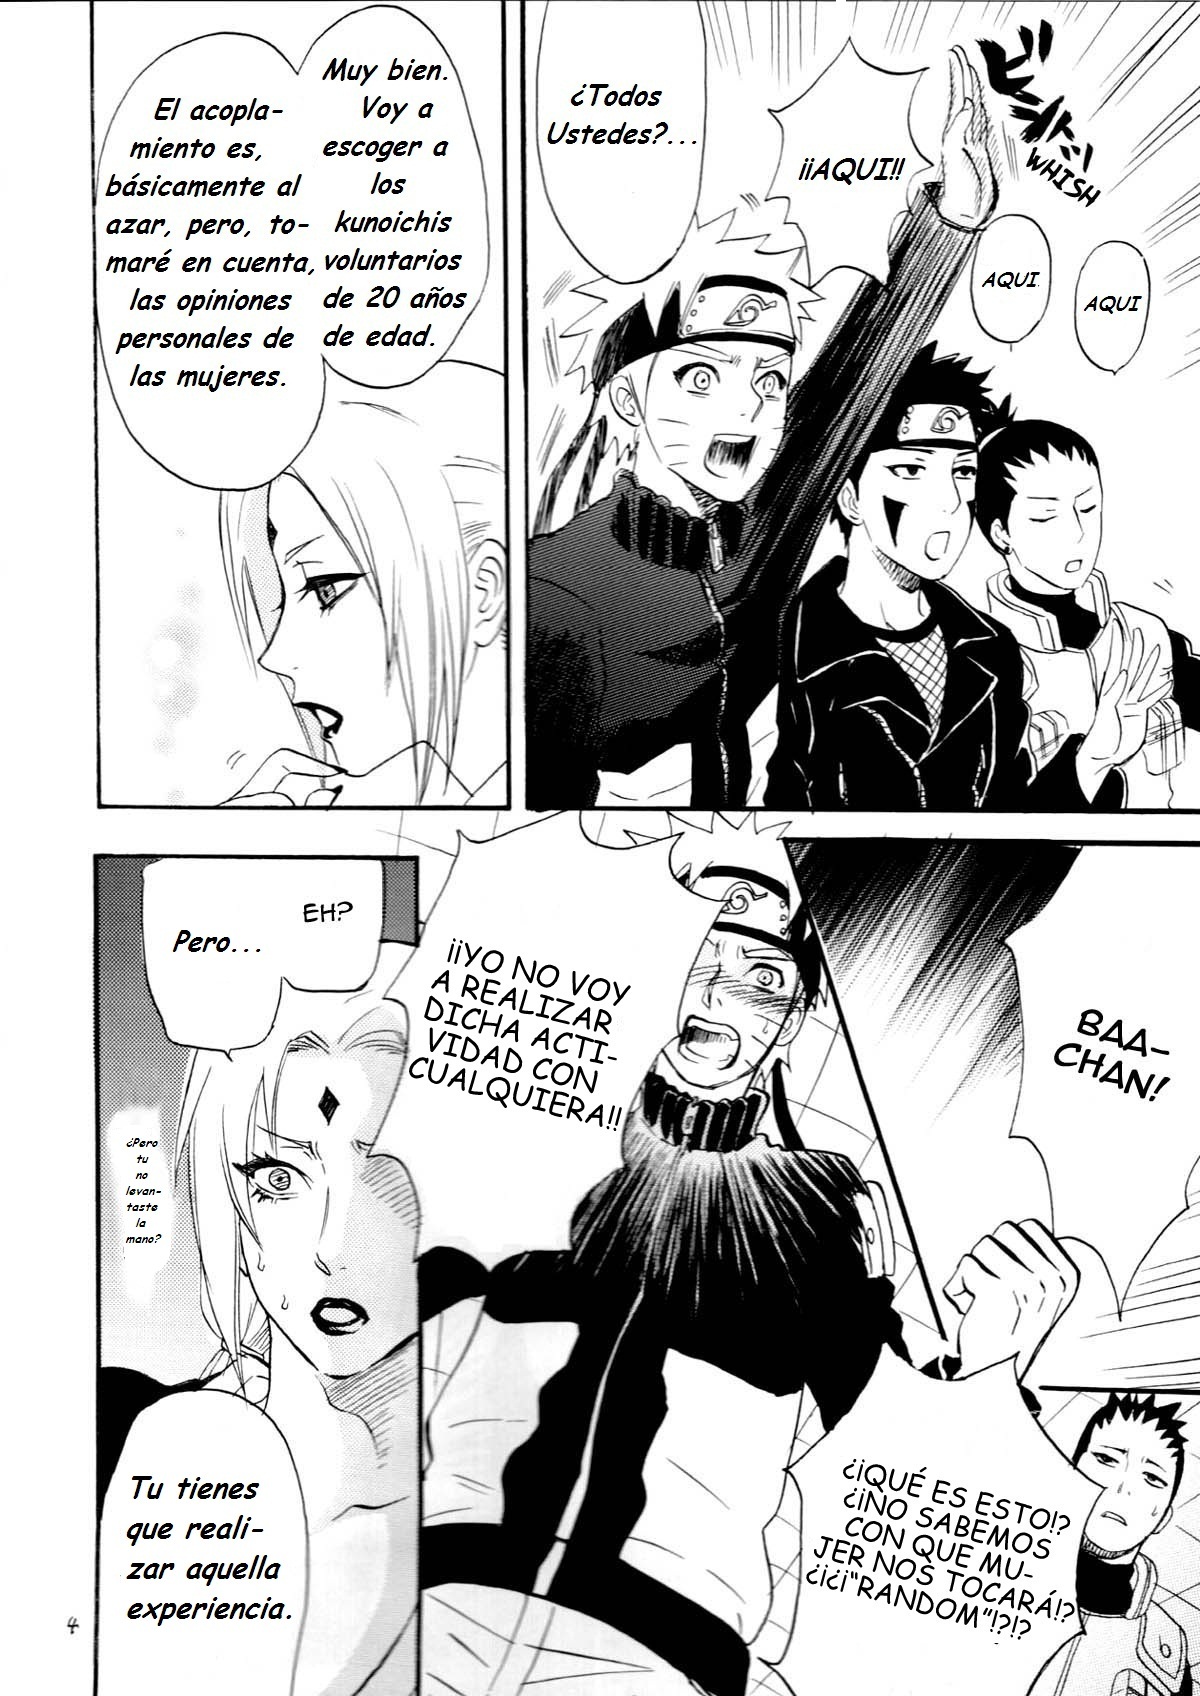 Fude Oroshi no Gi (Naruto Manga Yaoi) - 2 - Comics Porno - Hentai Manga - Cartoon XXX